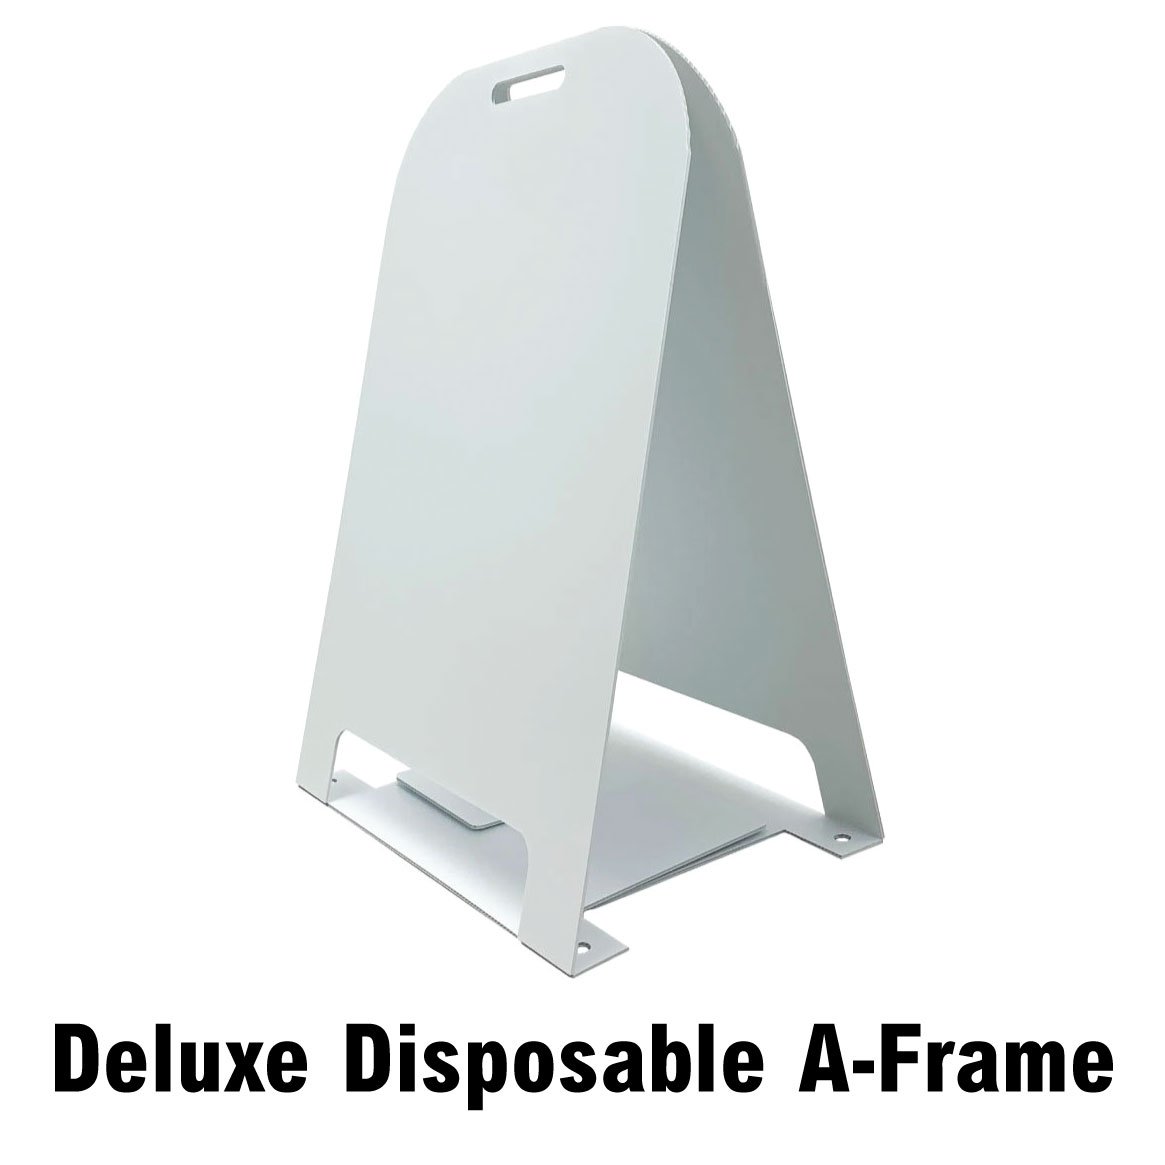 Disposable Custom Printed A-Frame Signs -  Order & Upload SD-CSTM-DISP-AFRAME - image 2